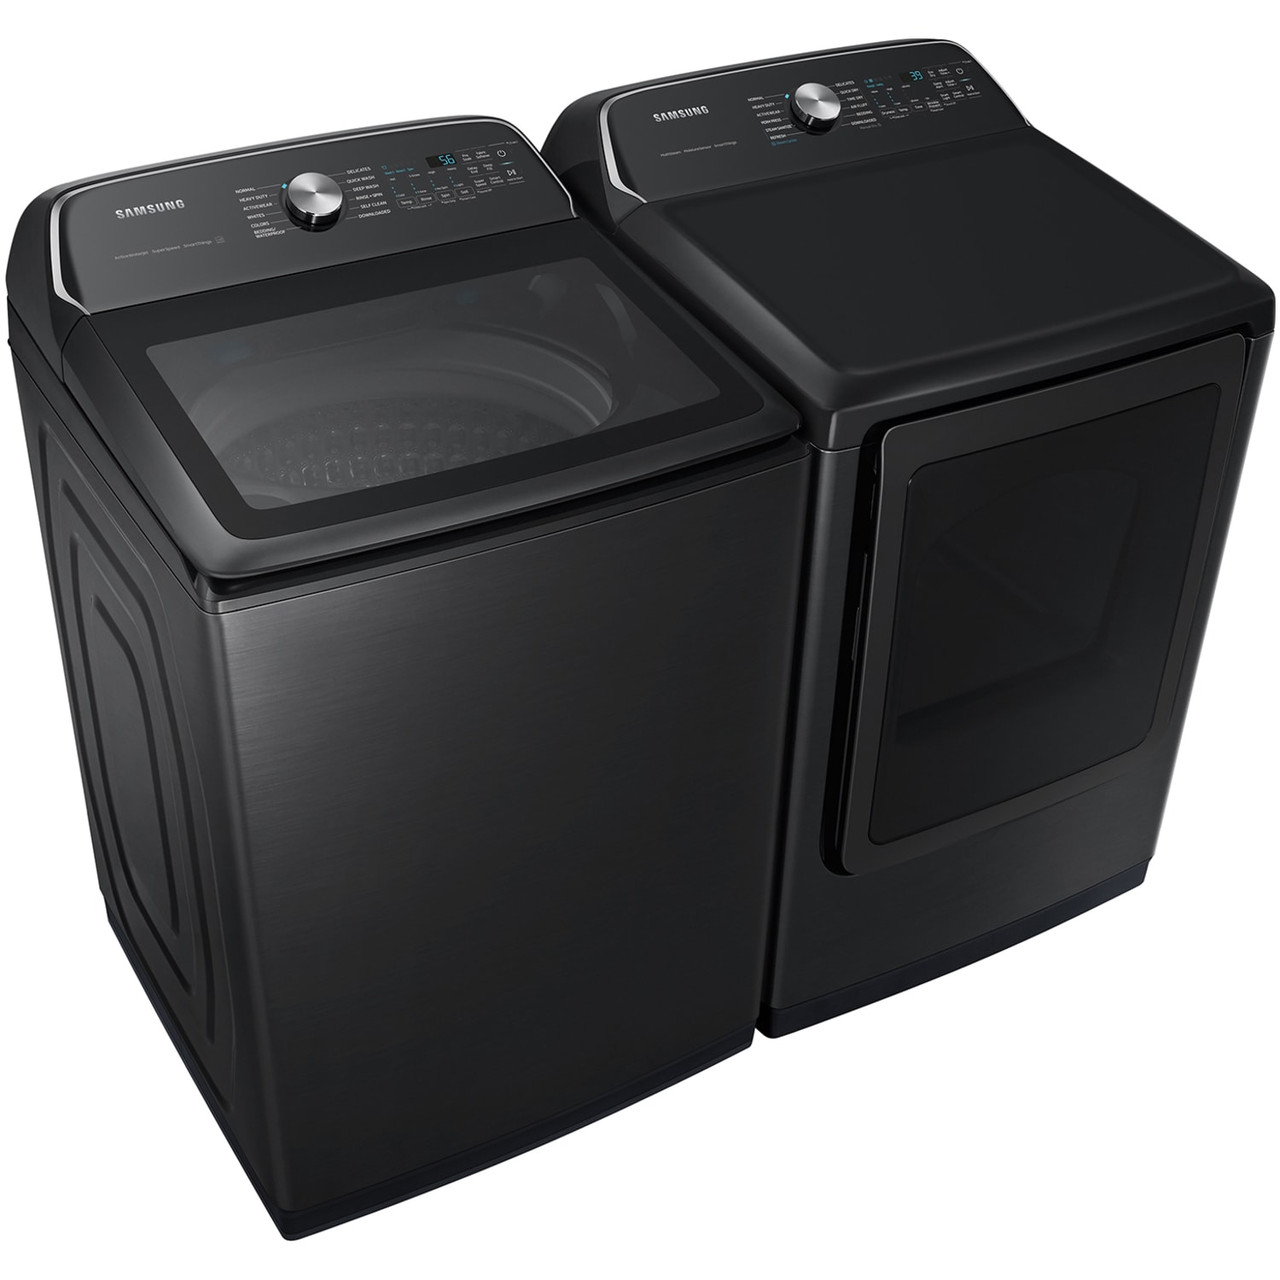 Samsung 7.4 cu. ft. Smart Electric Dryer with Steam Sanitize+ - DVE55CG7100V